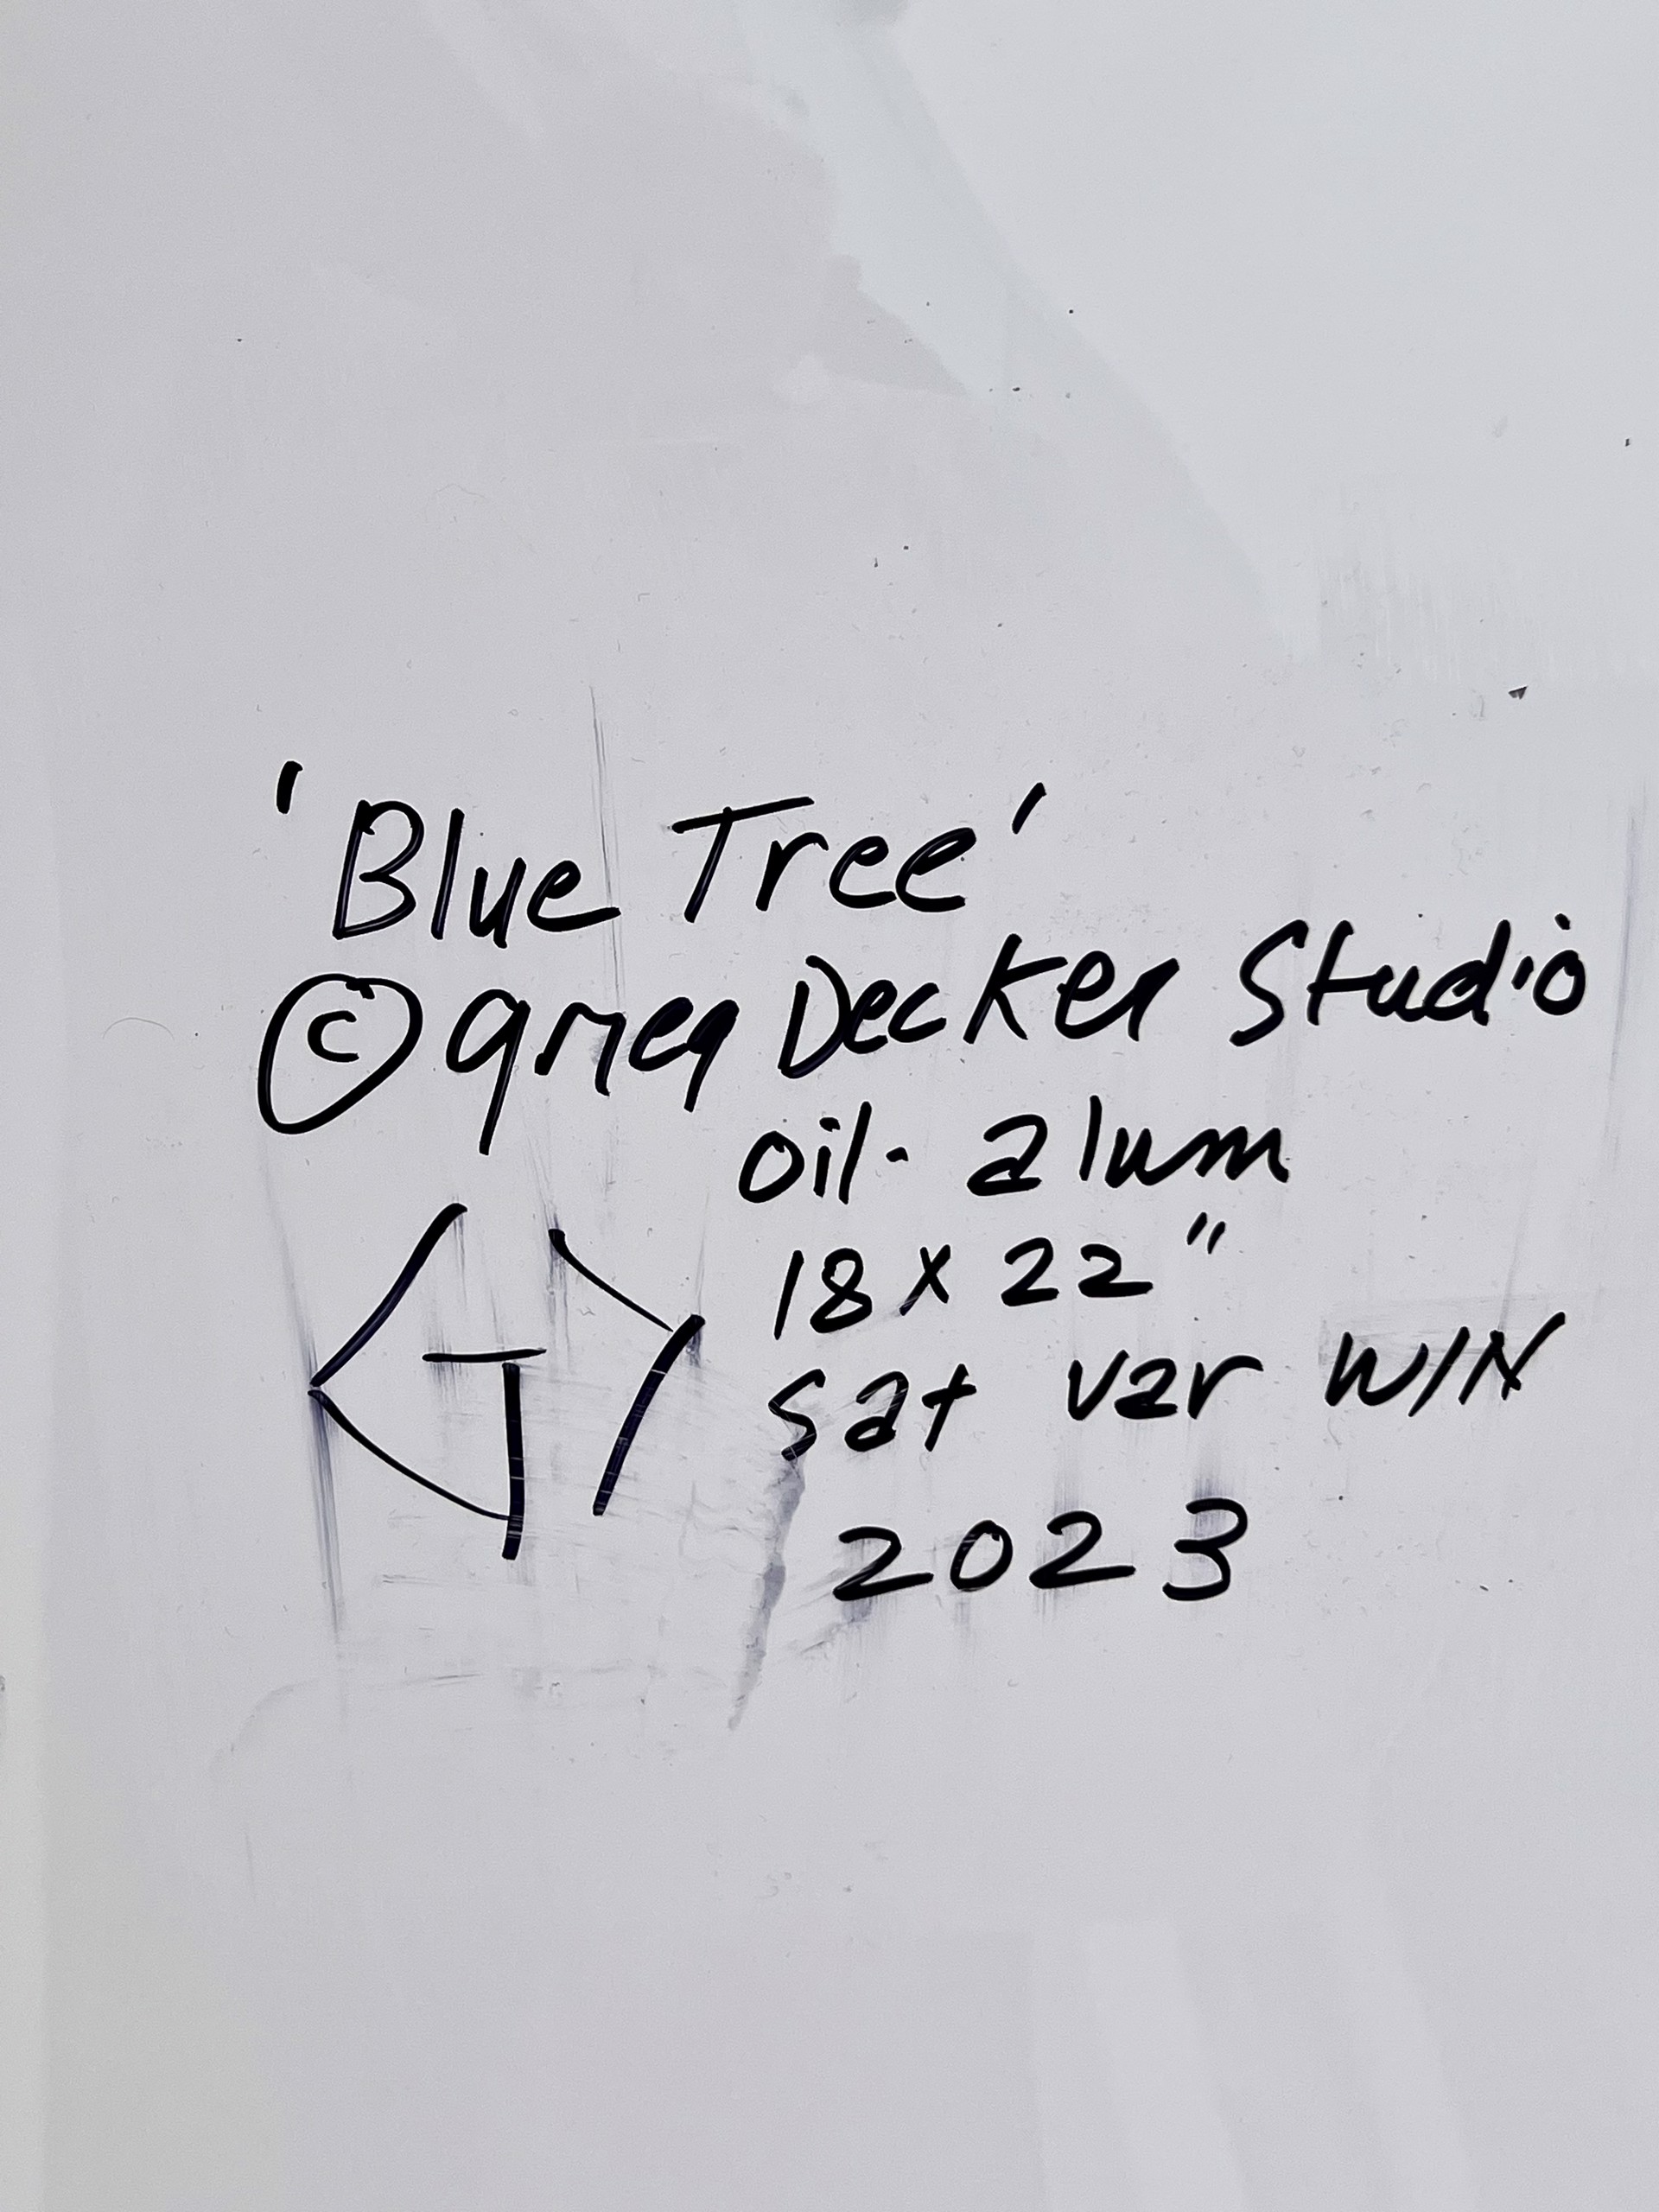 Blue Tree by Greg Decker